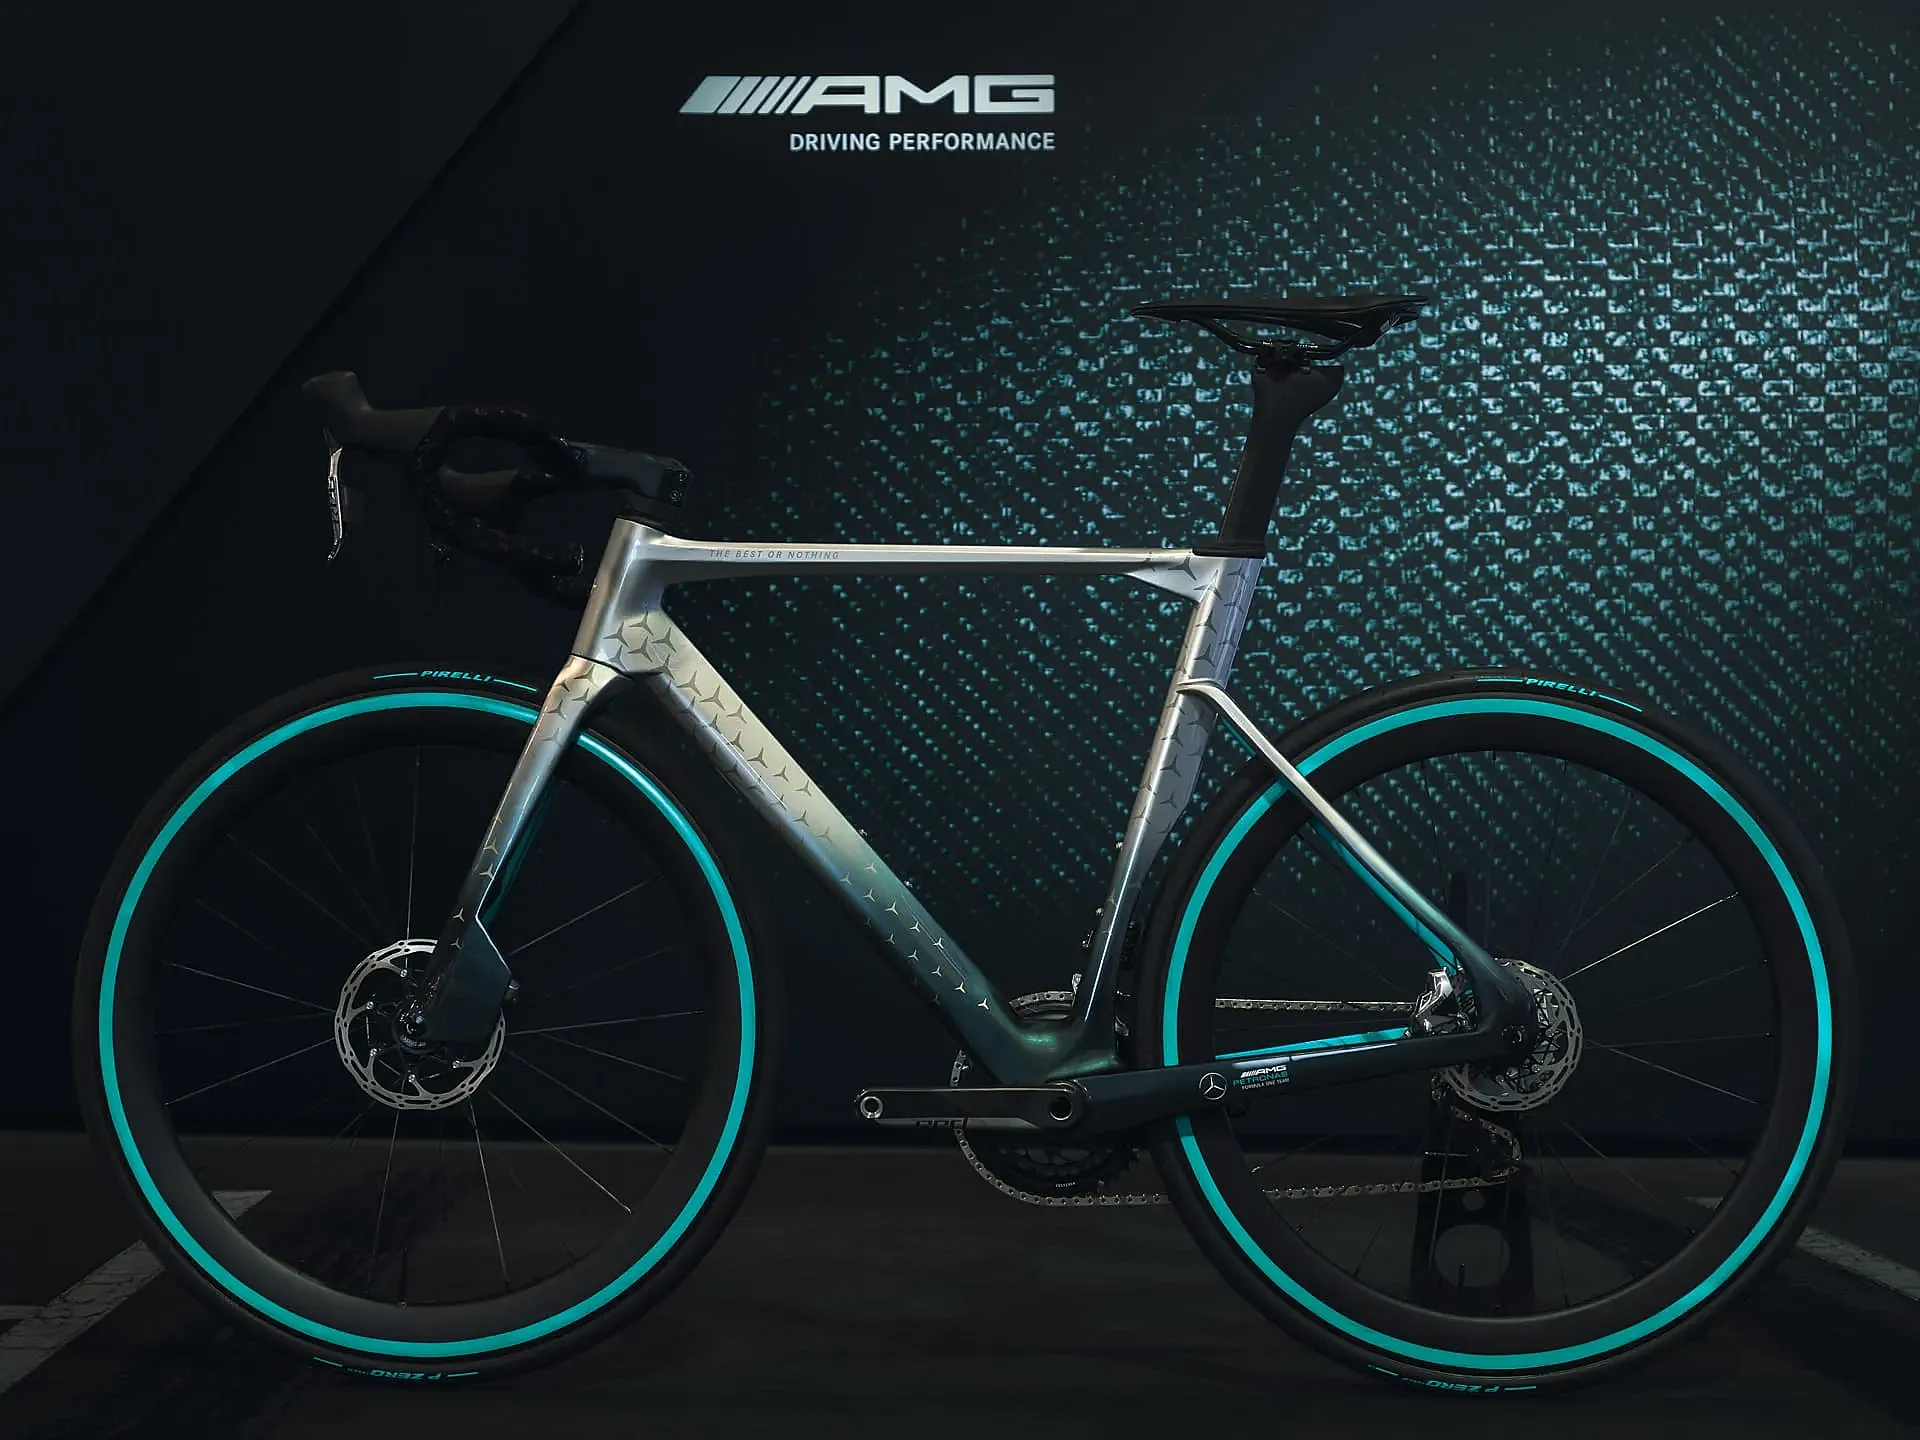 Te lo contamos todo sobre la bici inspirada en el Mercedes Benz AMG F1 Team.